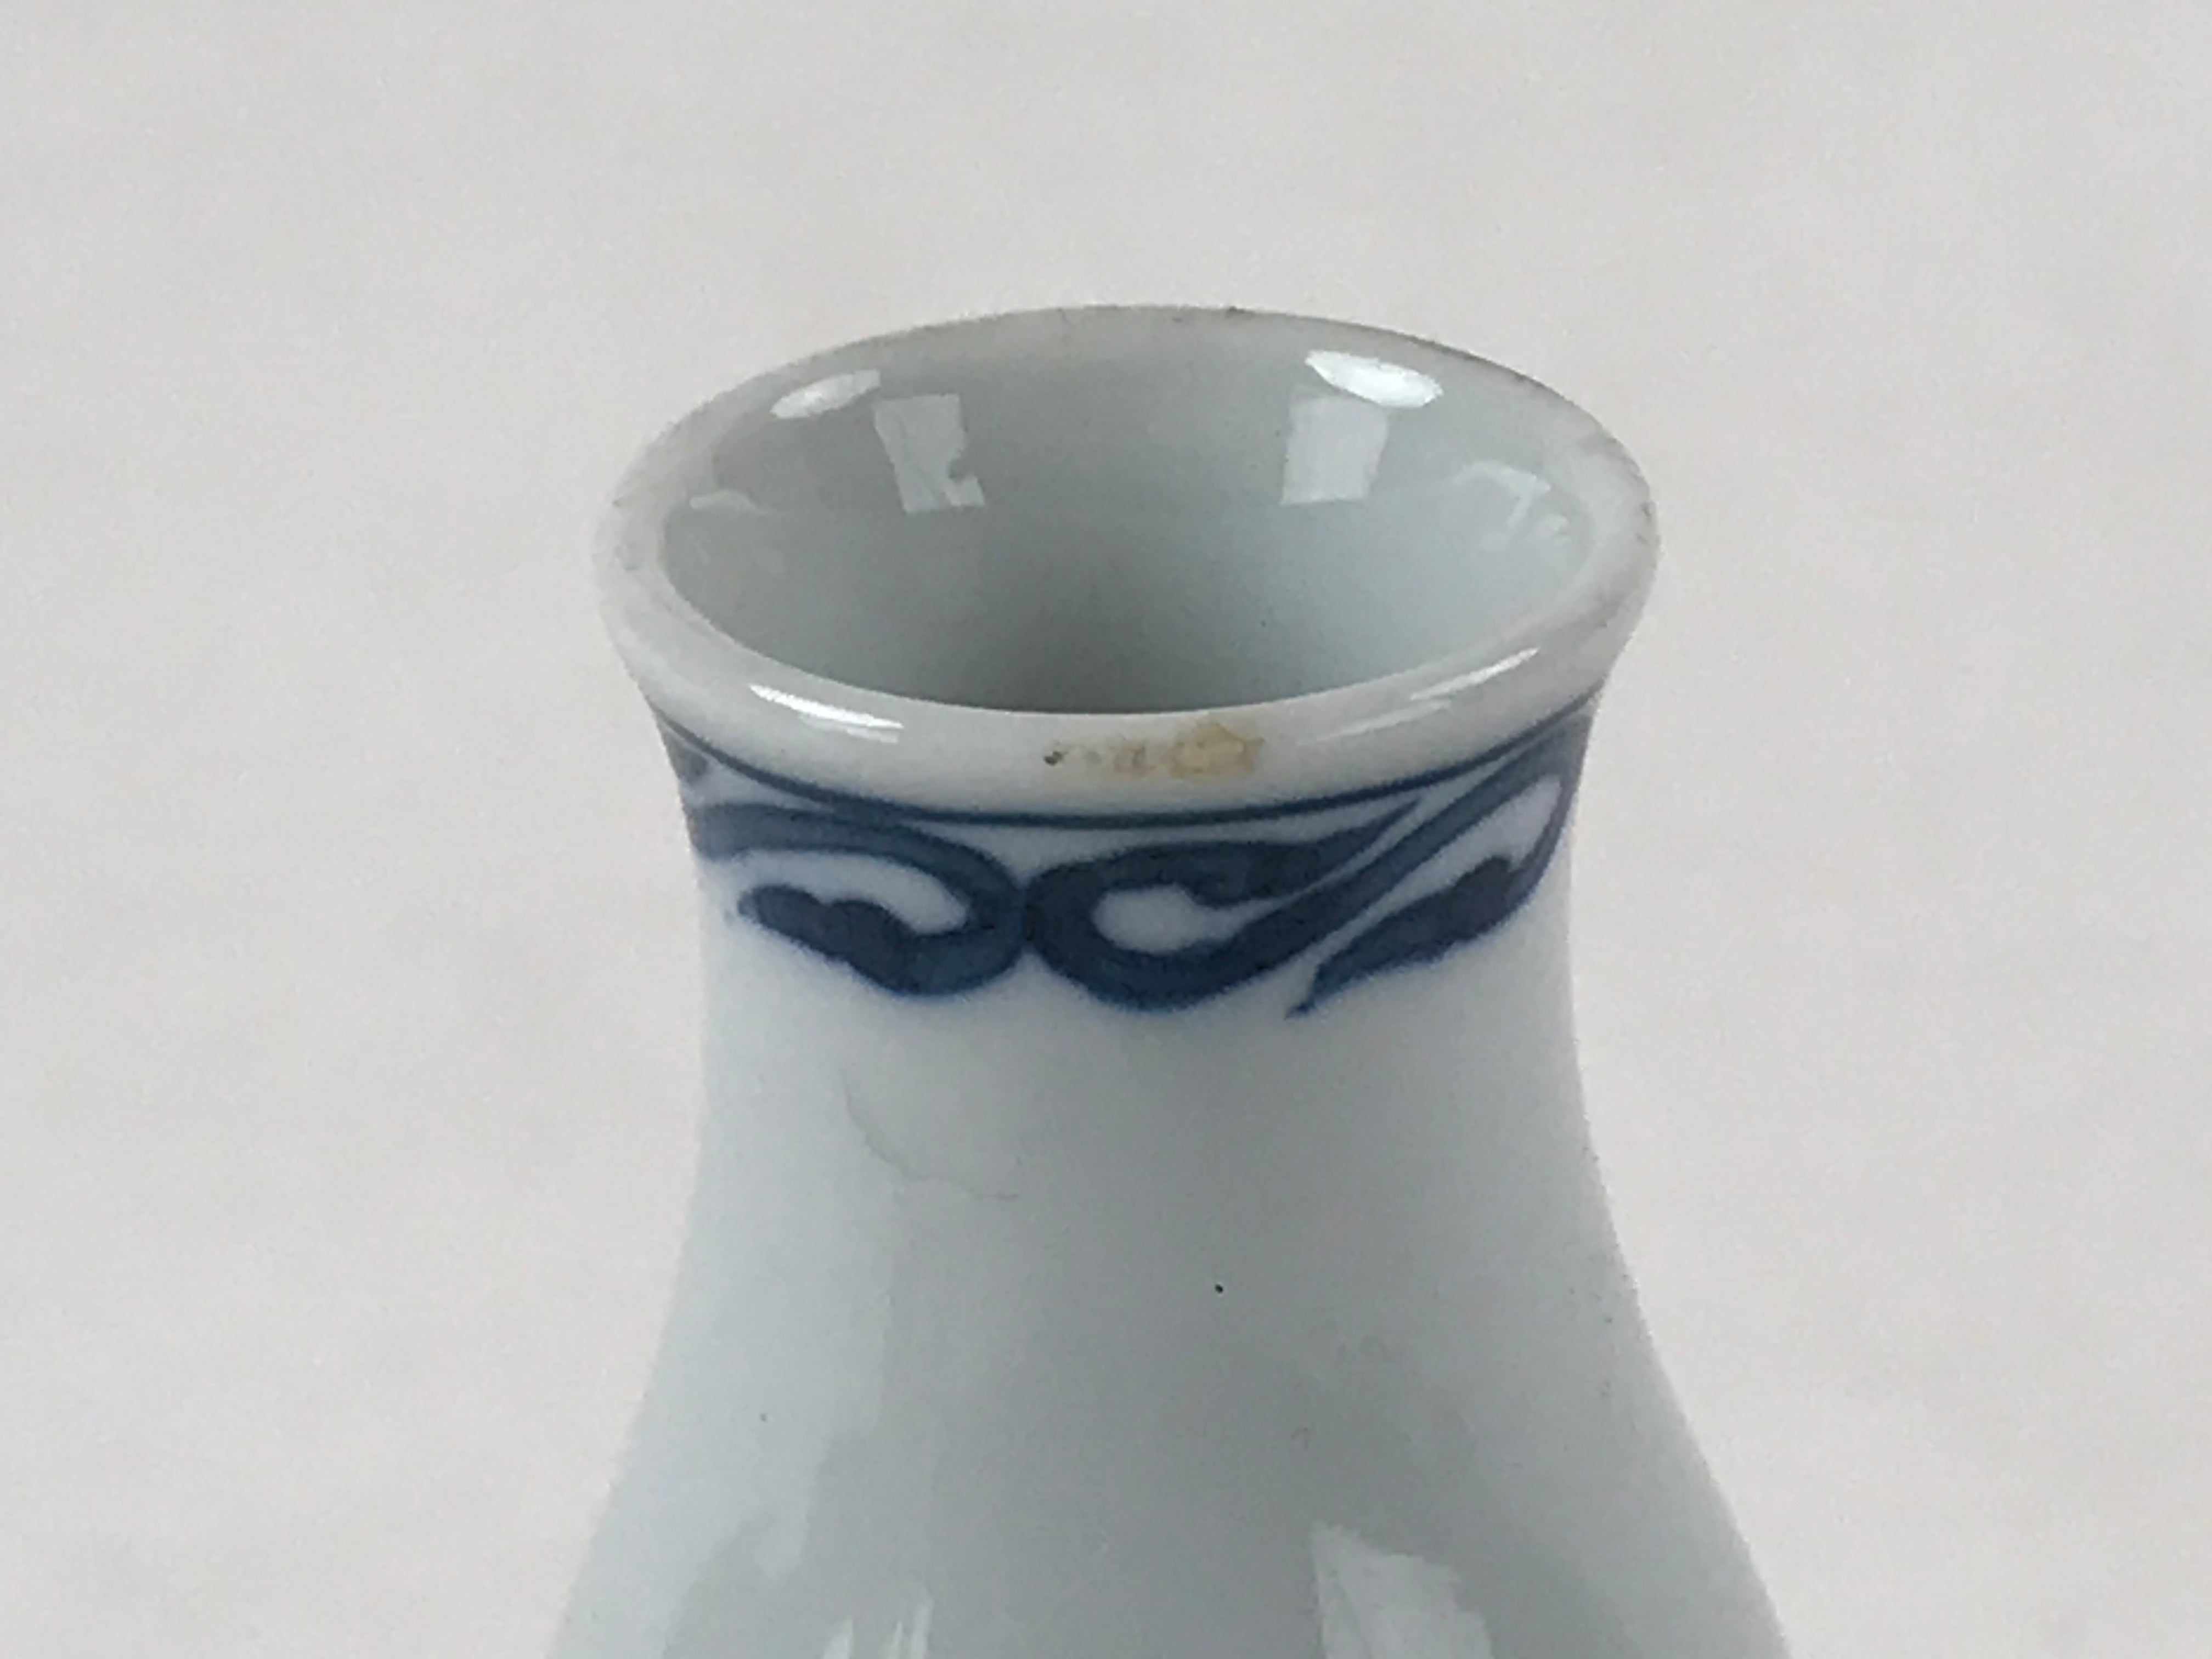 Japanese Sake Bottle Porcelain Tokkuri Vtg Arita Ware White Blue Landscape TS596